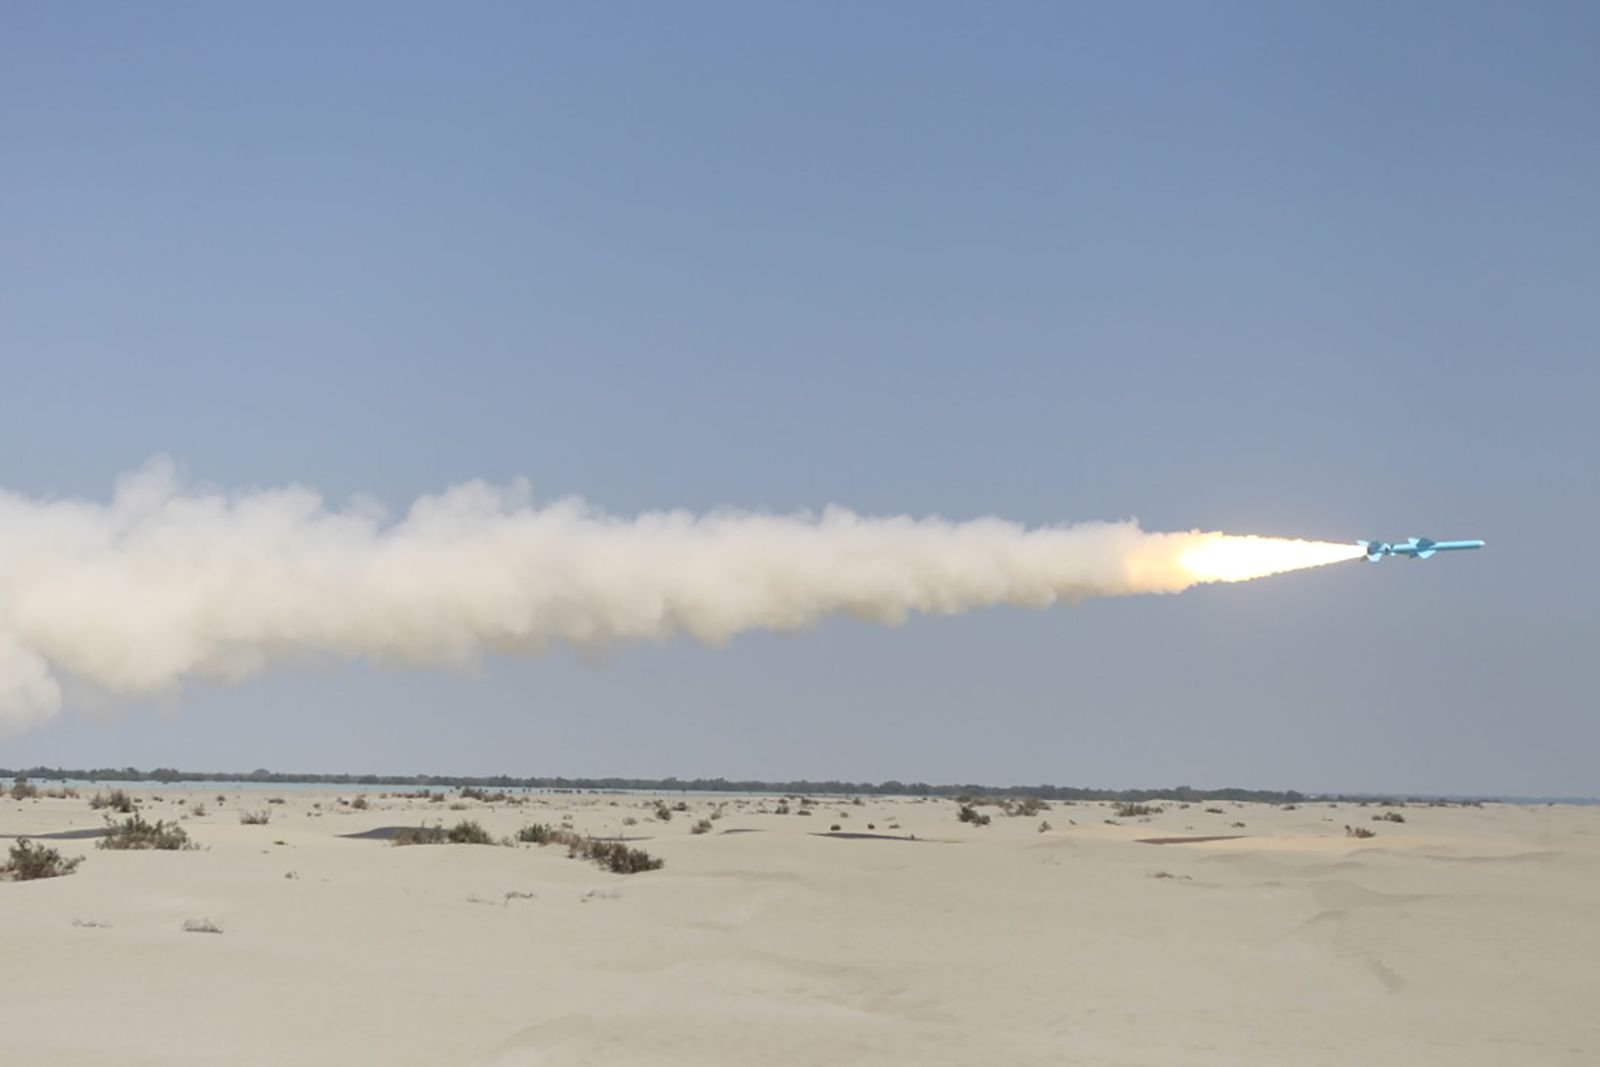 صاروخ أطلقه الجيش الإيراني خلال مناورة بحرية في خليج عُمان - 14 يناير 2021 - REUTERS